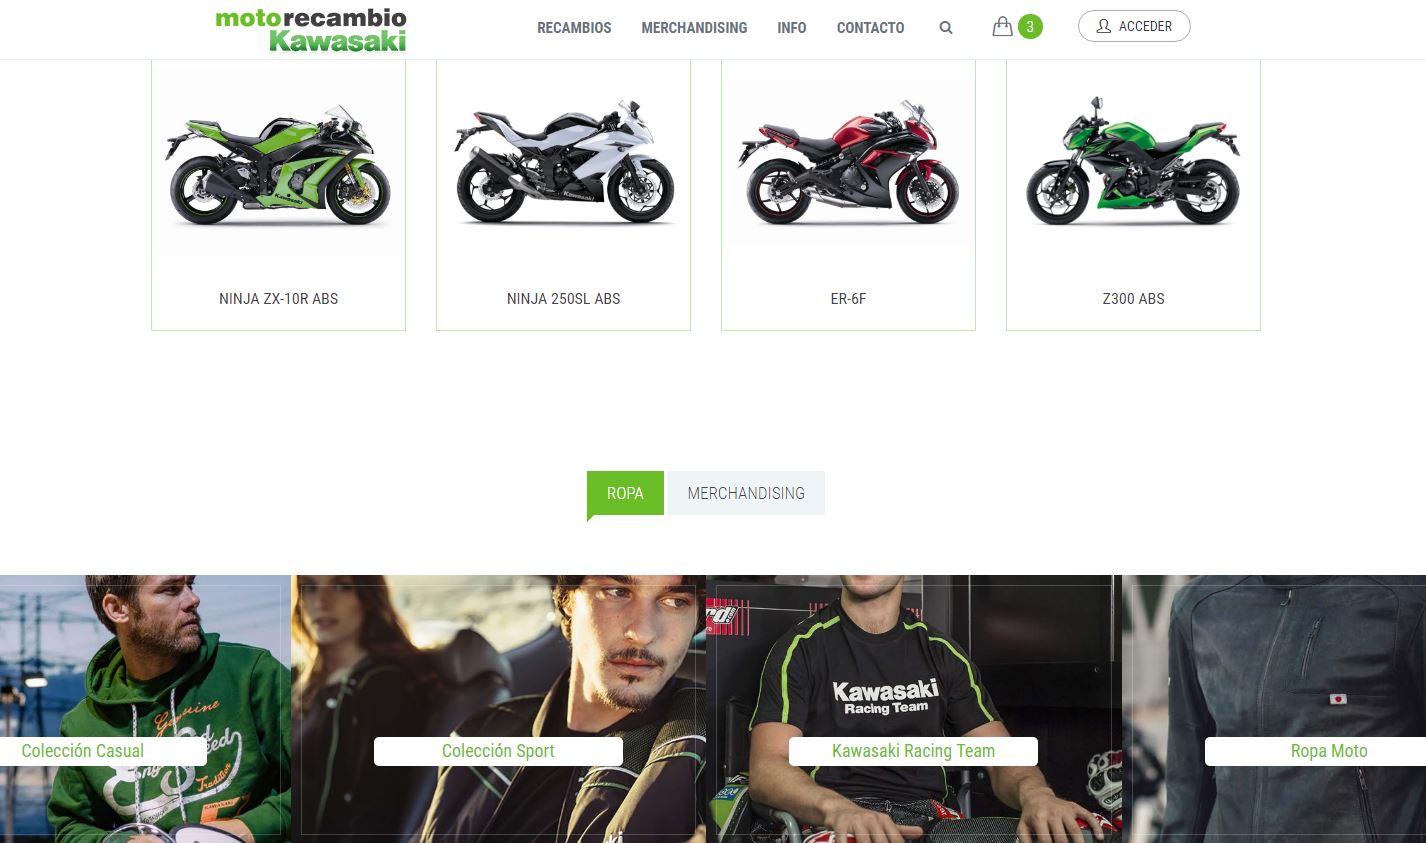 Diseño y desarrollo web en Motorecambio kawasaki